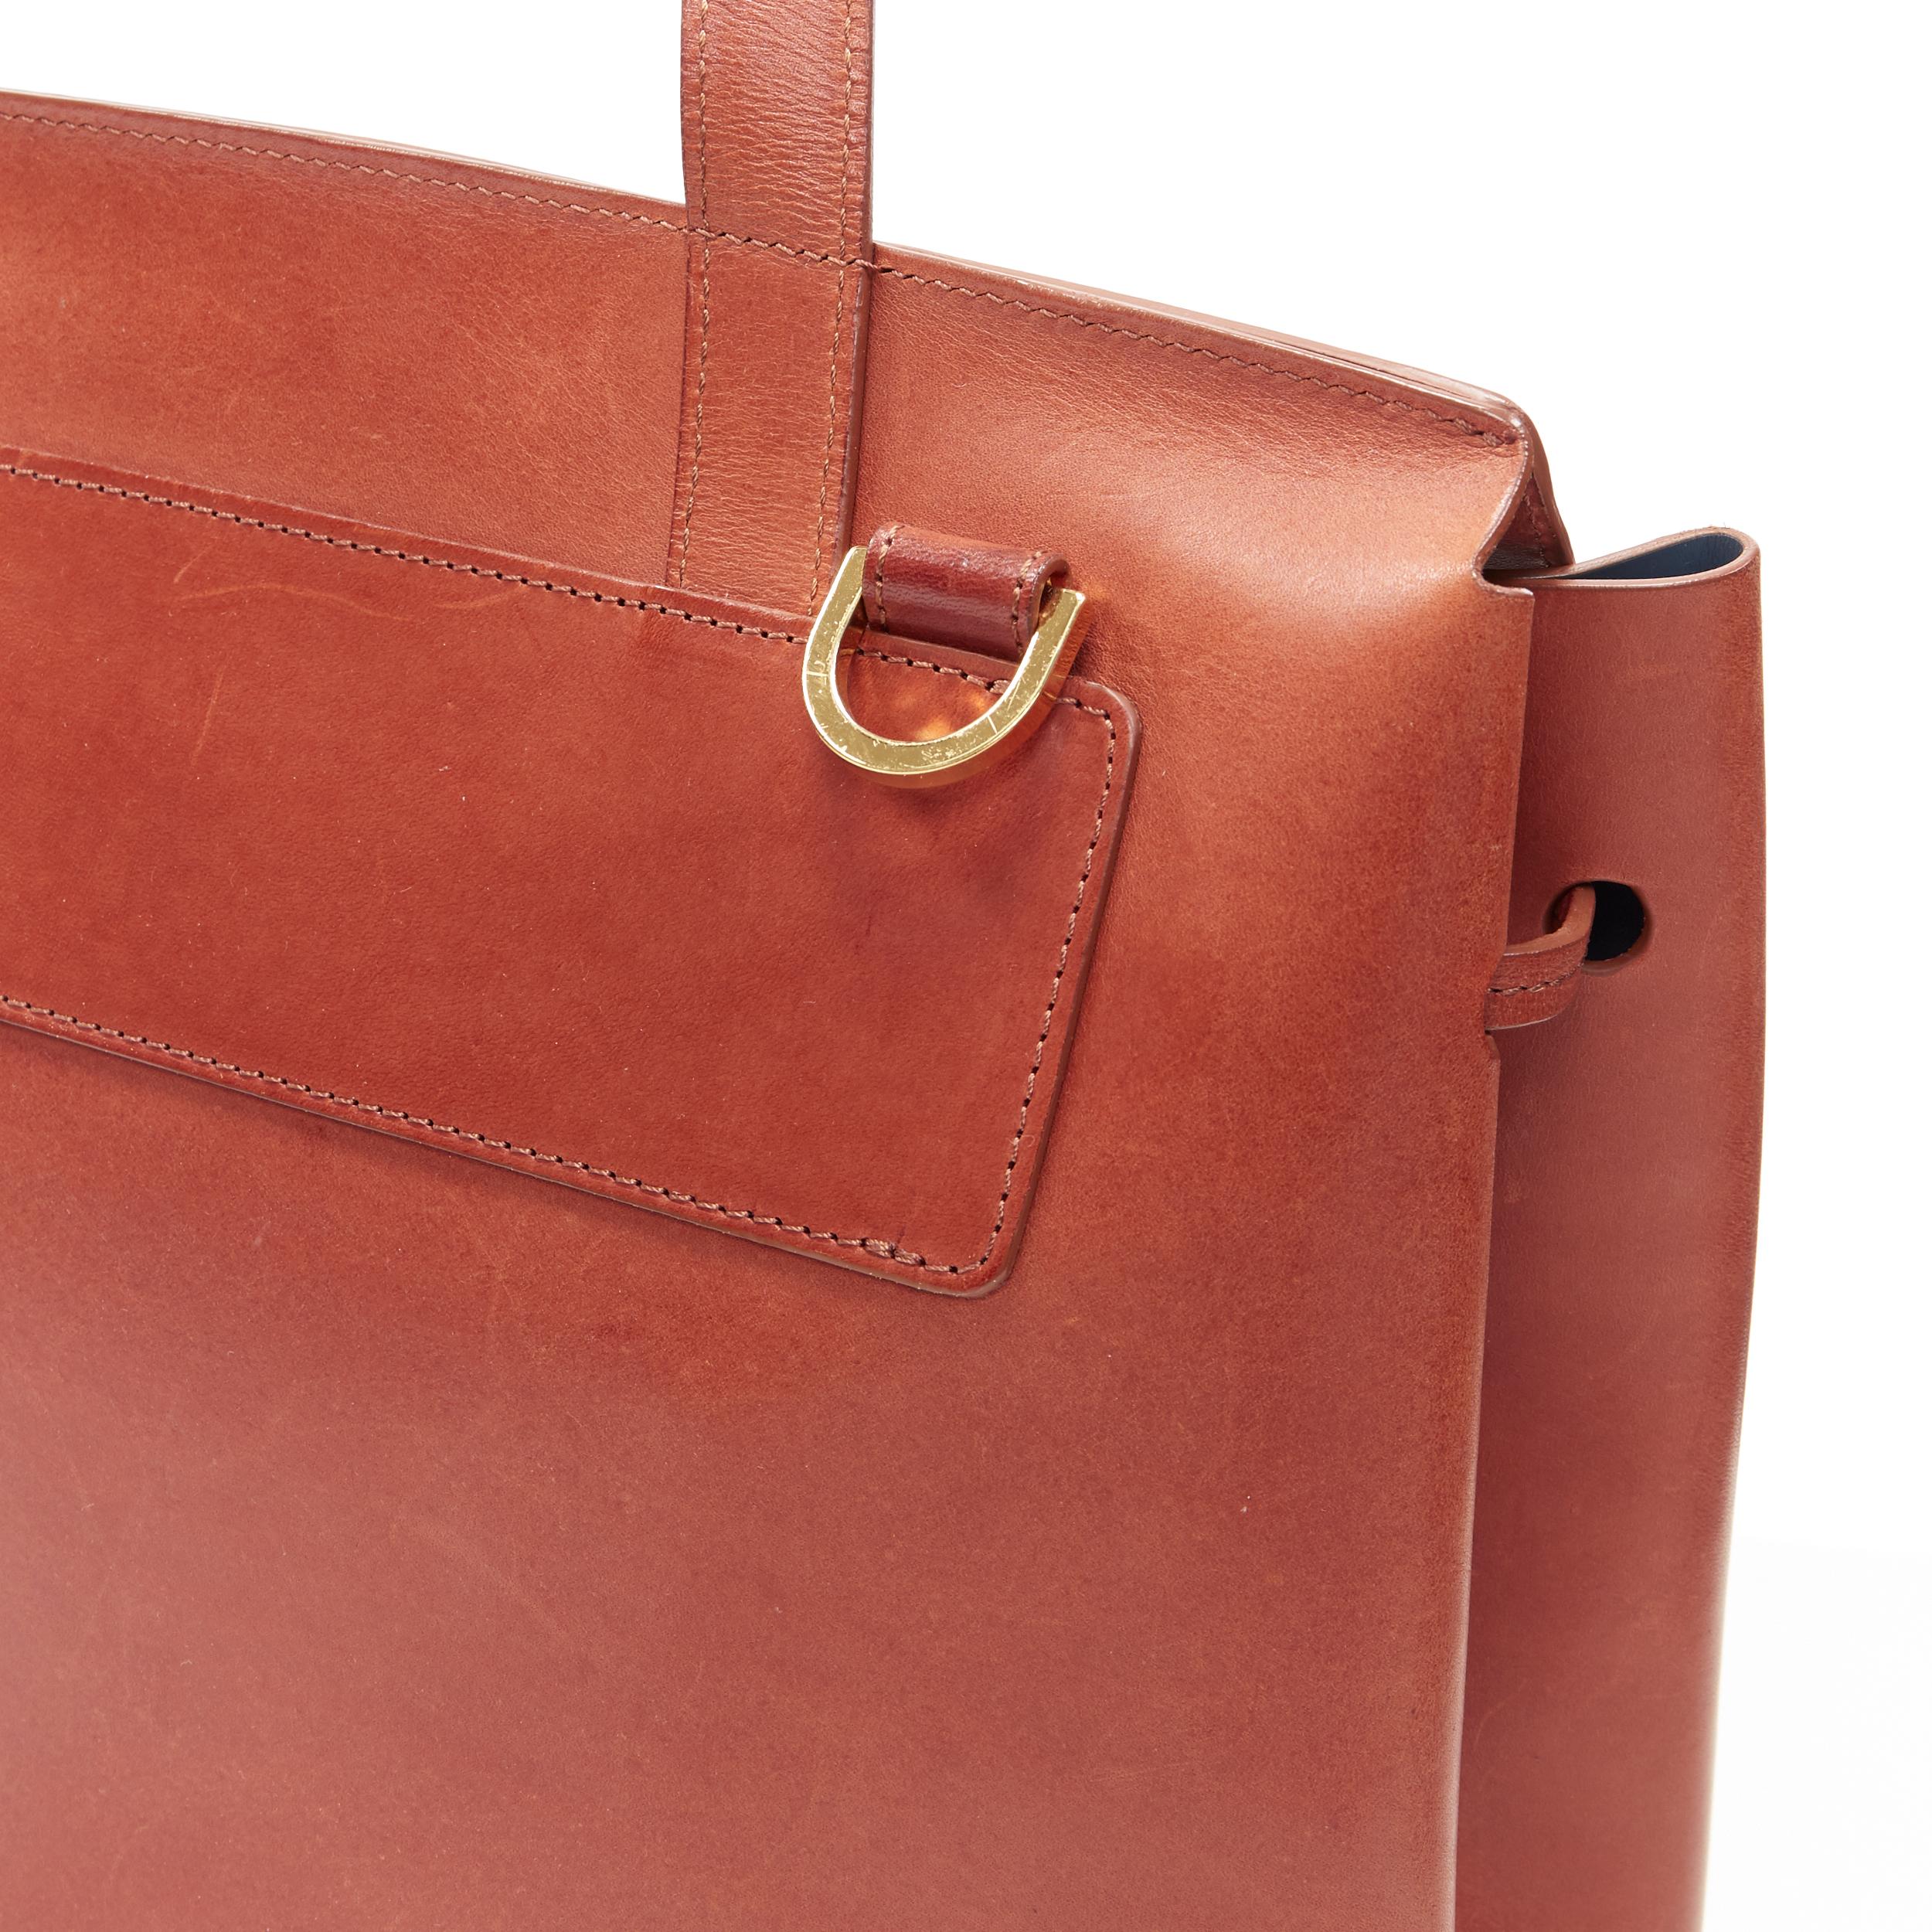 MANSUR GAVRIEL Lady cognac brown smooth leather flap shoulder satchel bag 1